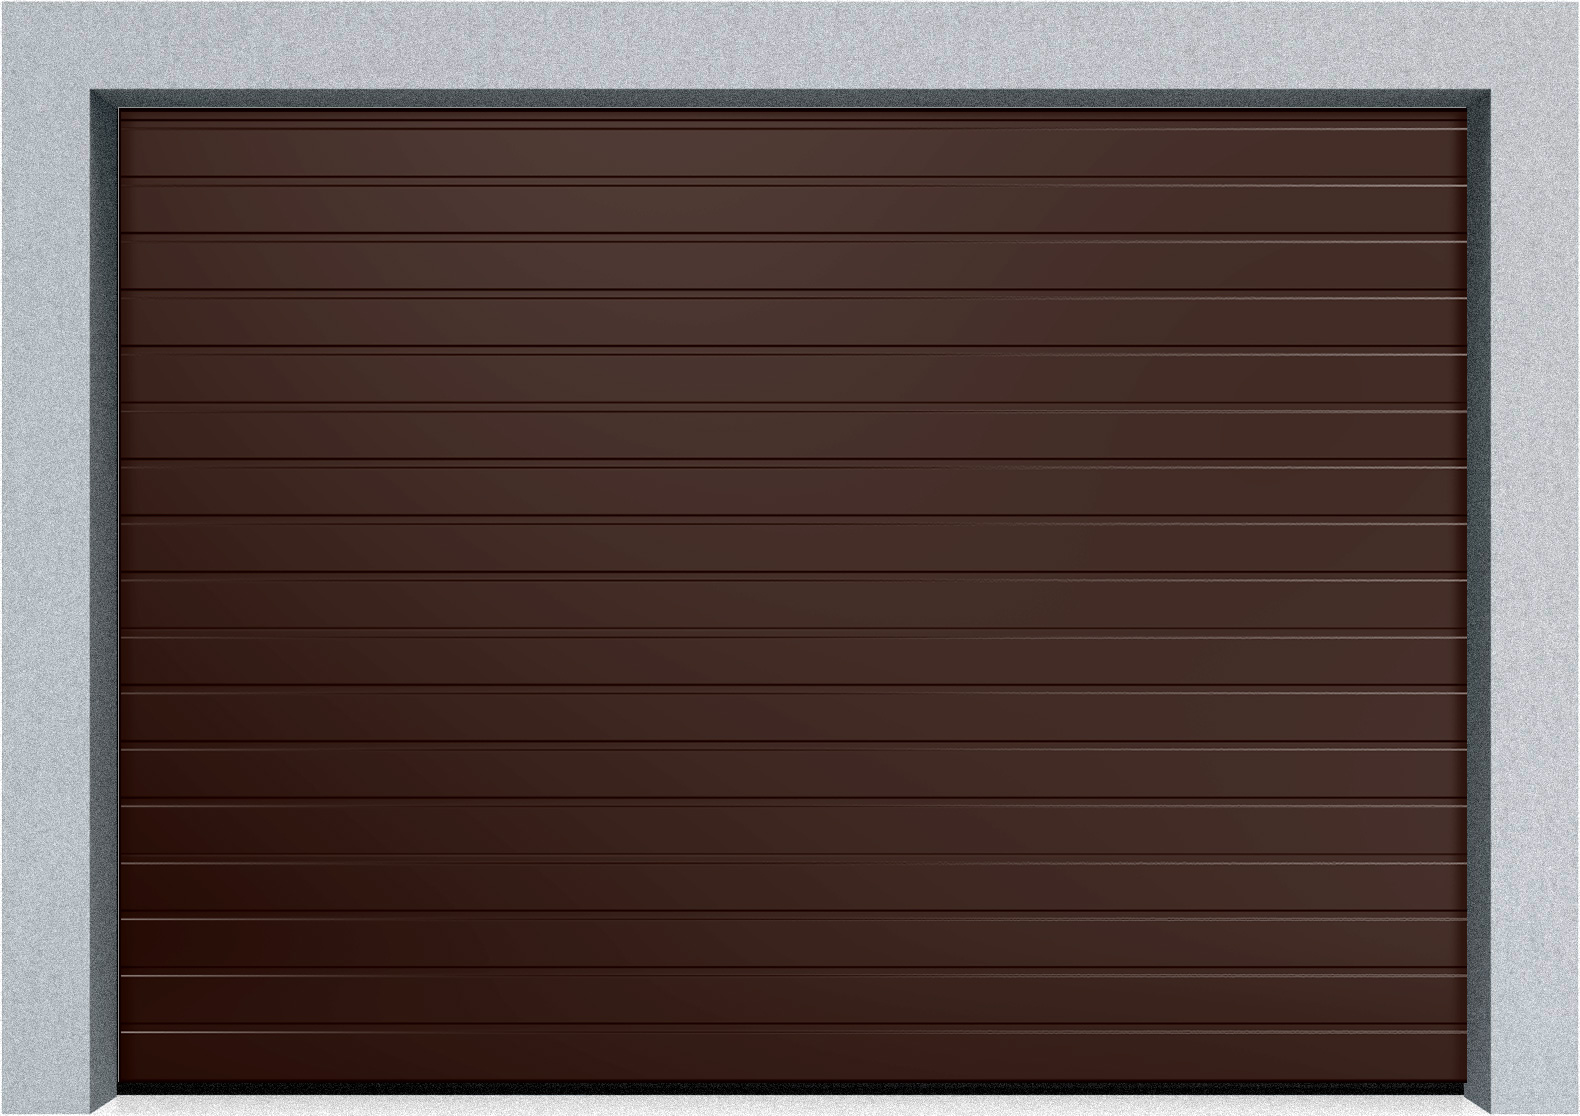  Секционные гаражные ворота DoorHan RSD01 2500x2300 S-гофр, M-гофр, Микроволна стандартные цвета, пружины растяжения, фото 3 